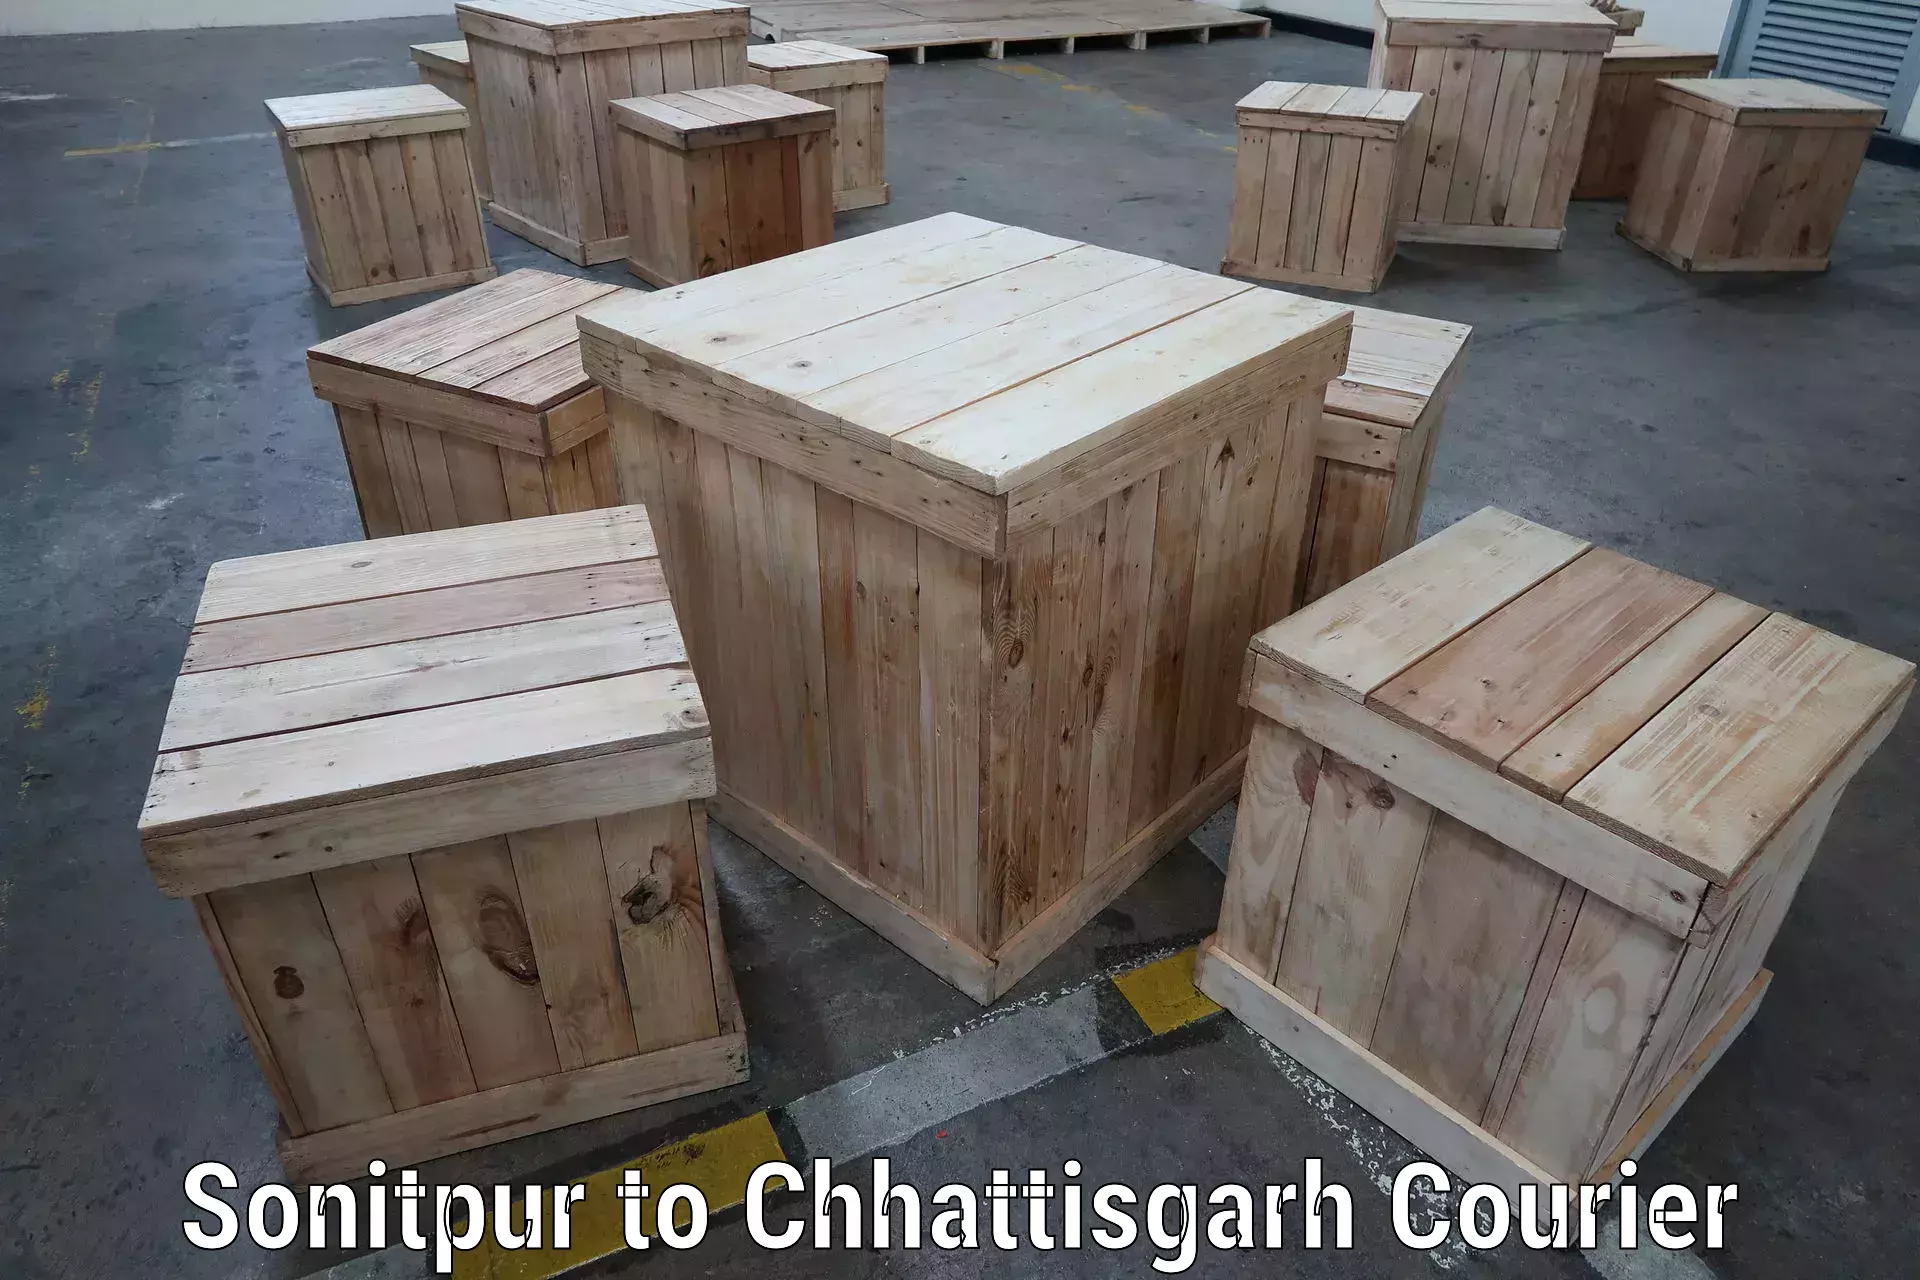 Cargo delivery service Sonitpur to Chhattisgarh